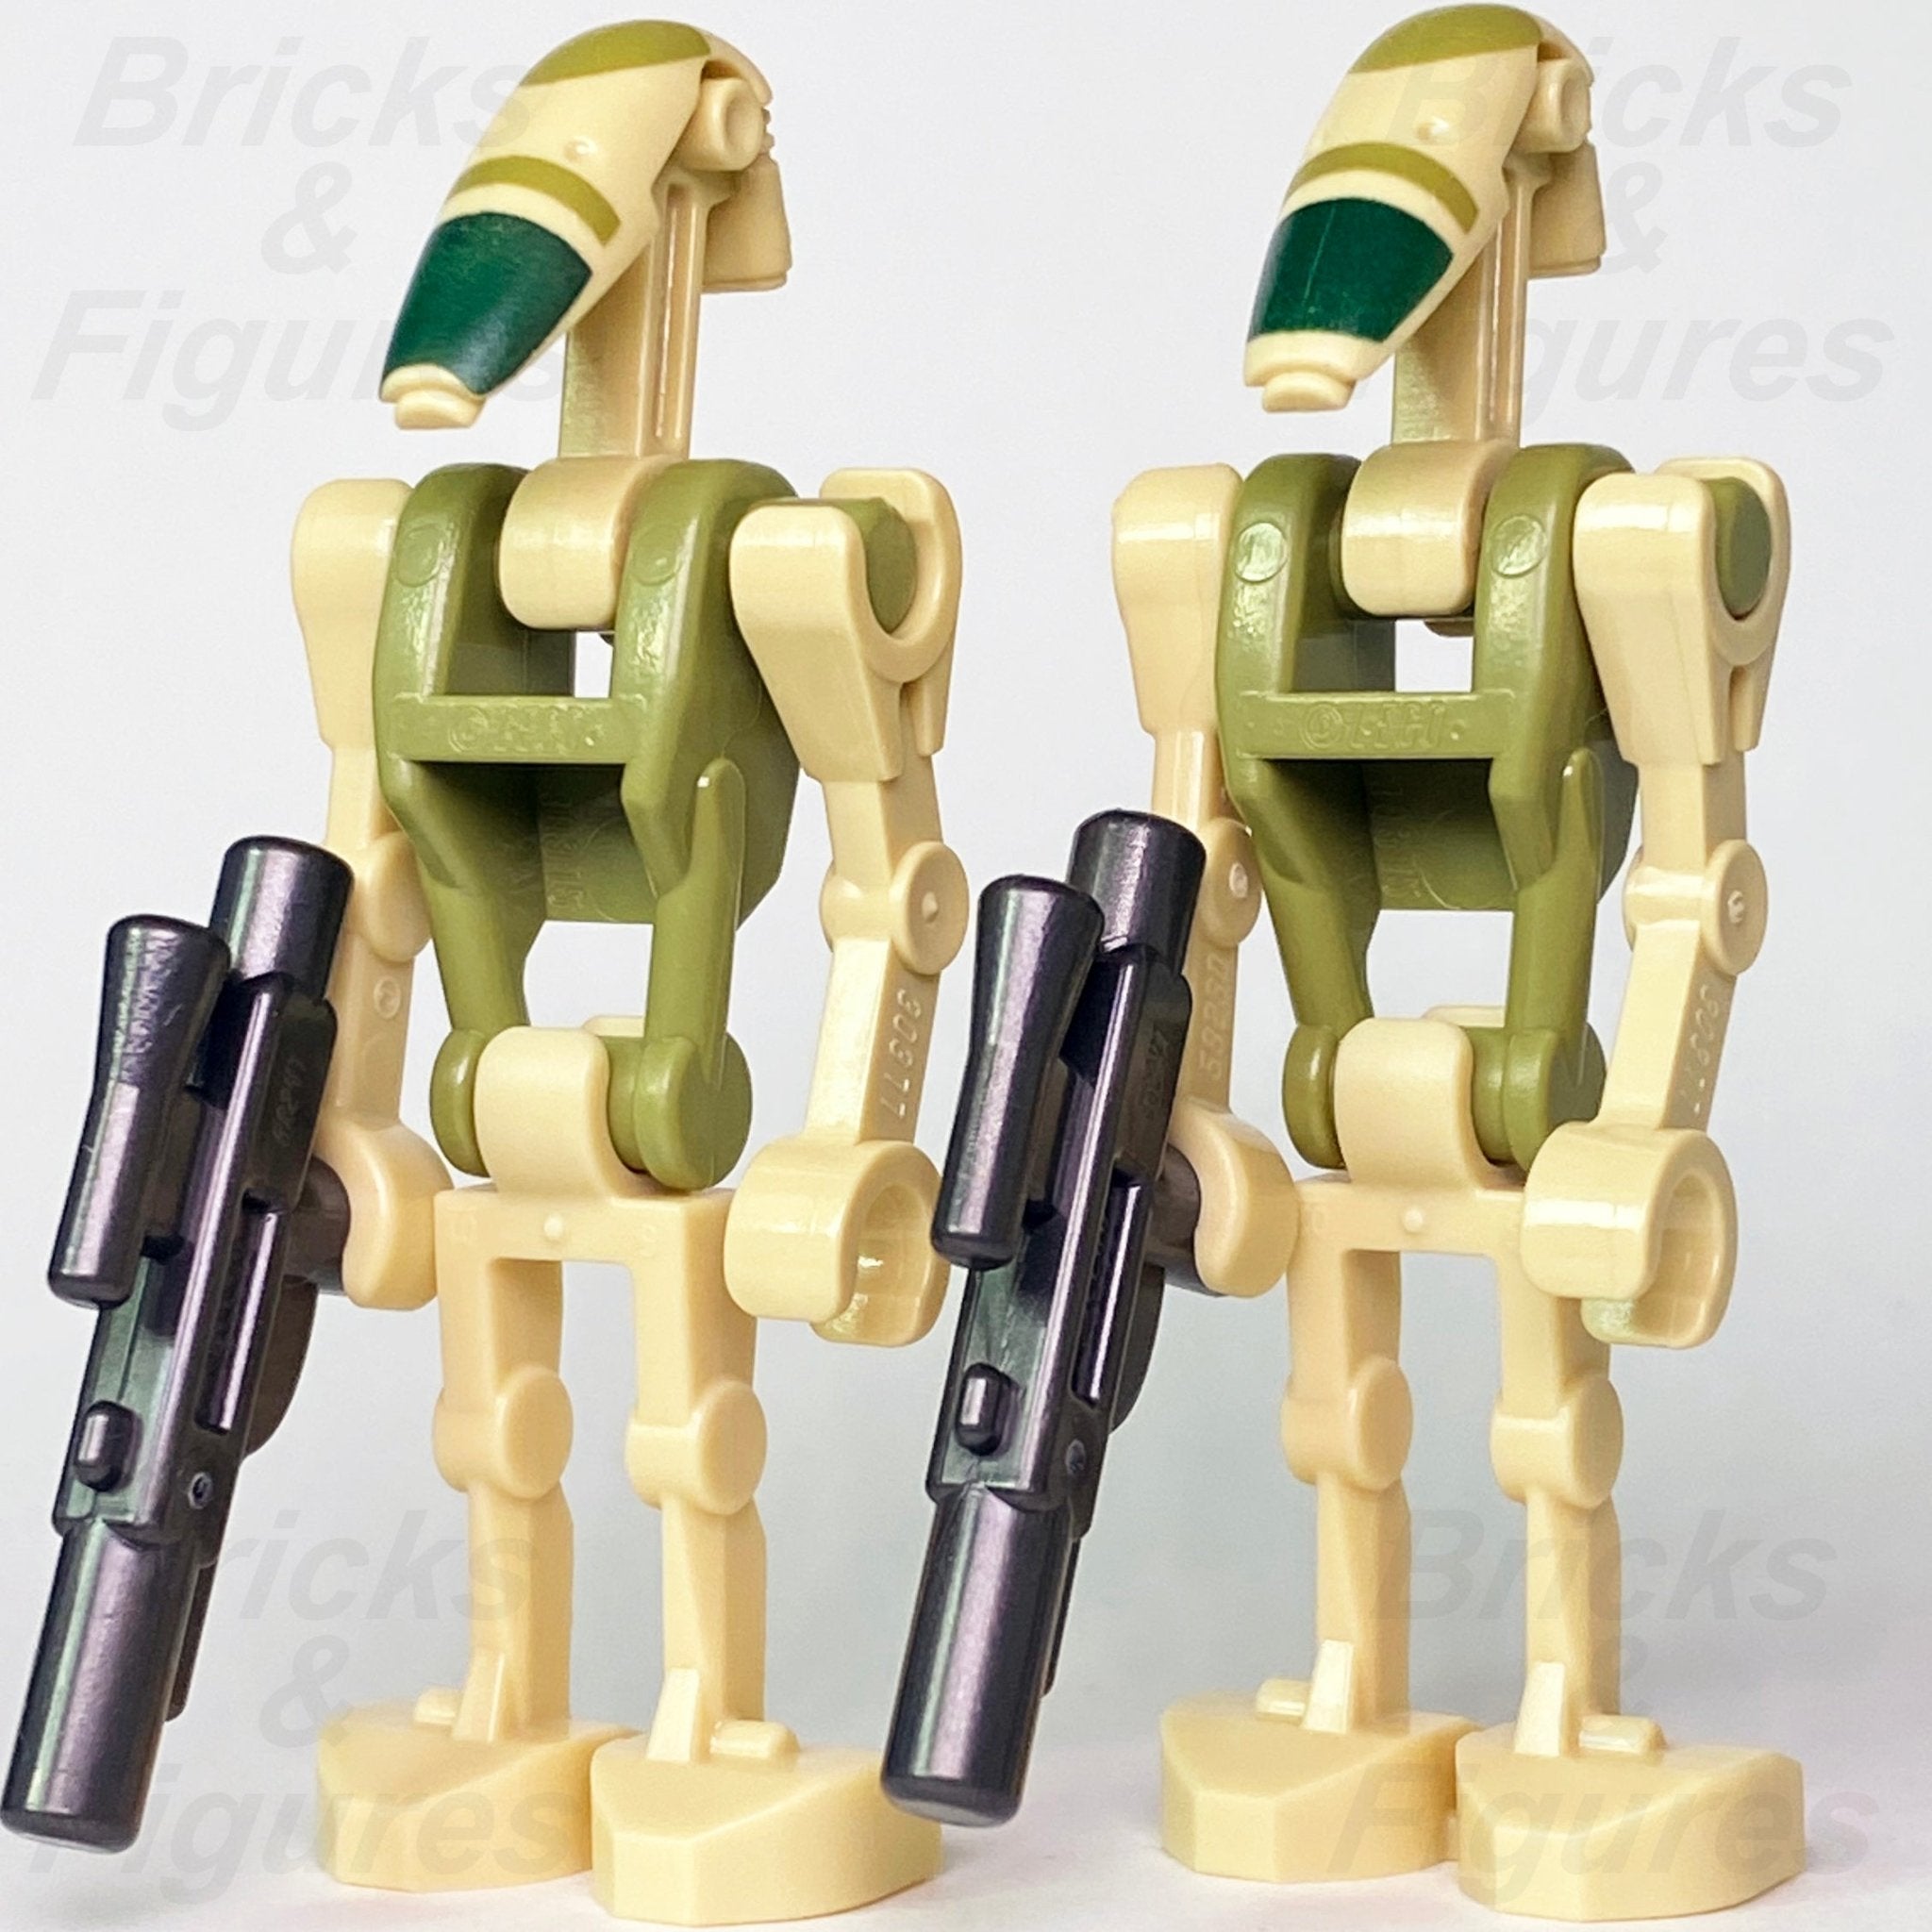 LEGO Battle Droid Minifigures